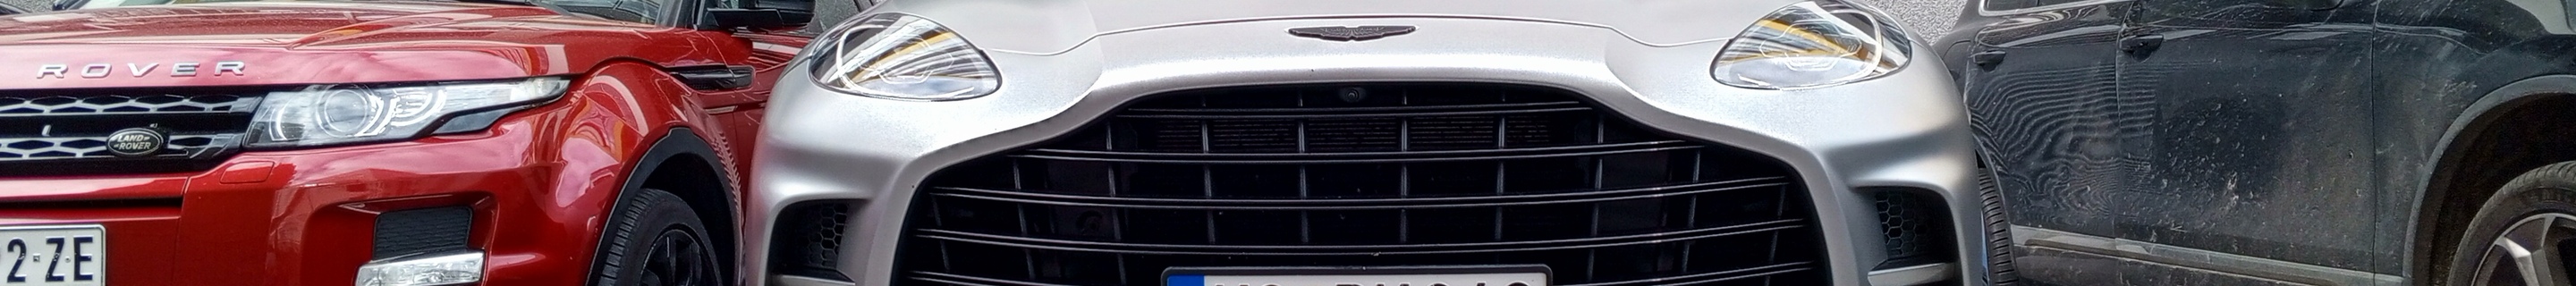 Aston Martin DBX707